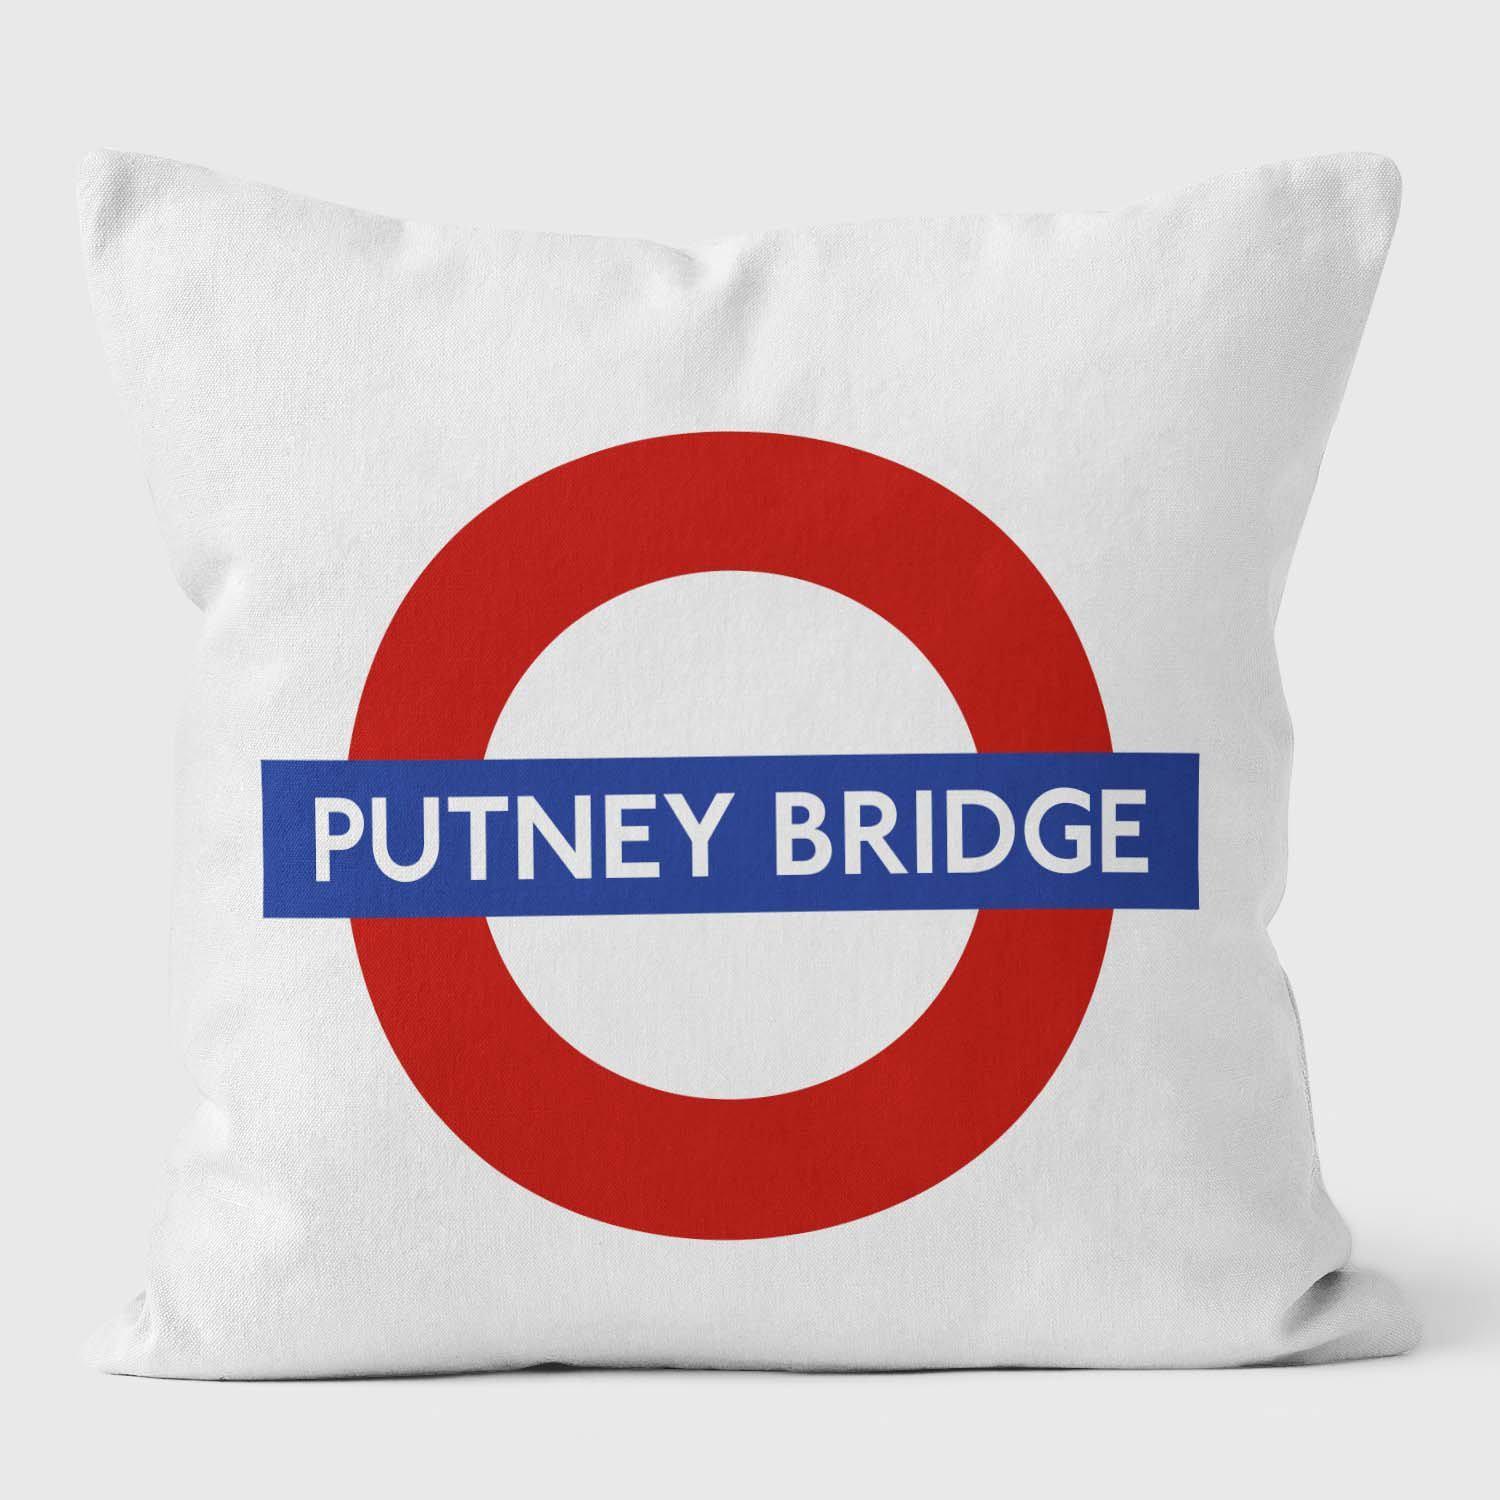 Putney Bridge London Underground Tube Station Roundel Cushion - Handmade Cushions UK - WeLoveCushions